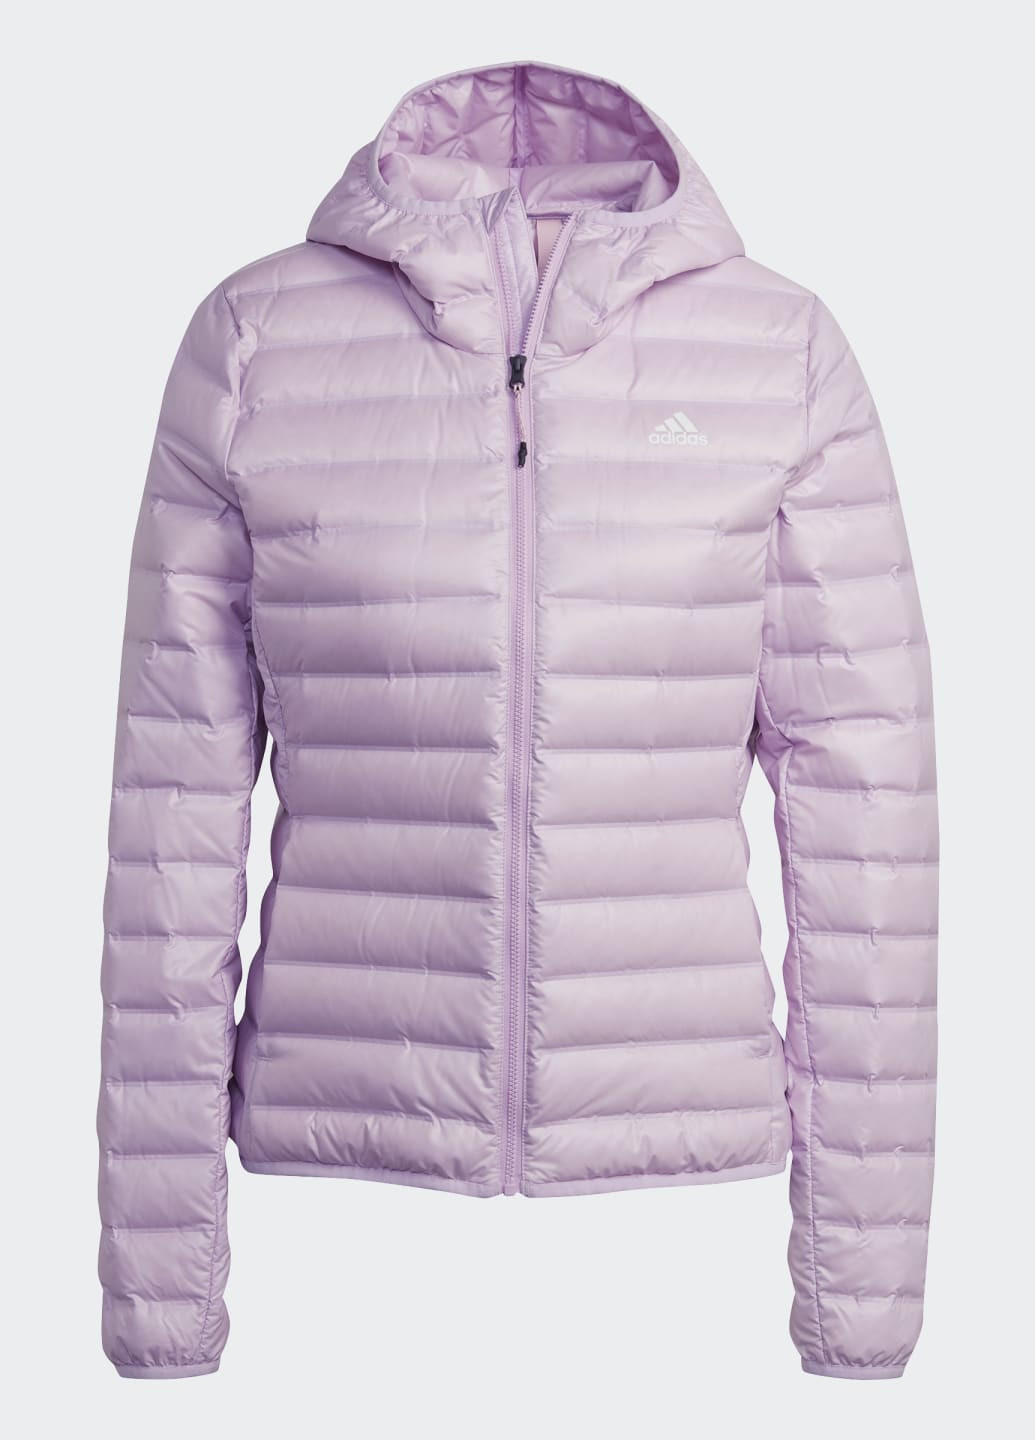 Фиолетовая демисезонная куртка varilite adidas